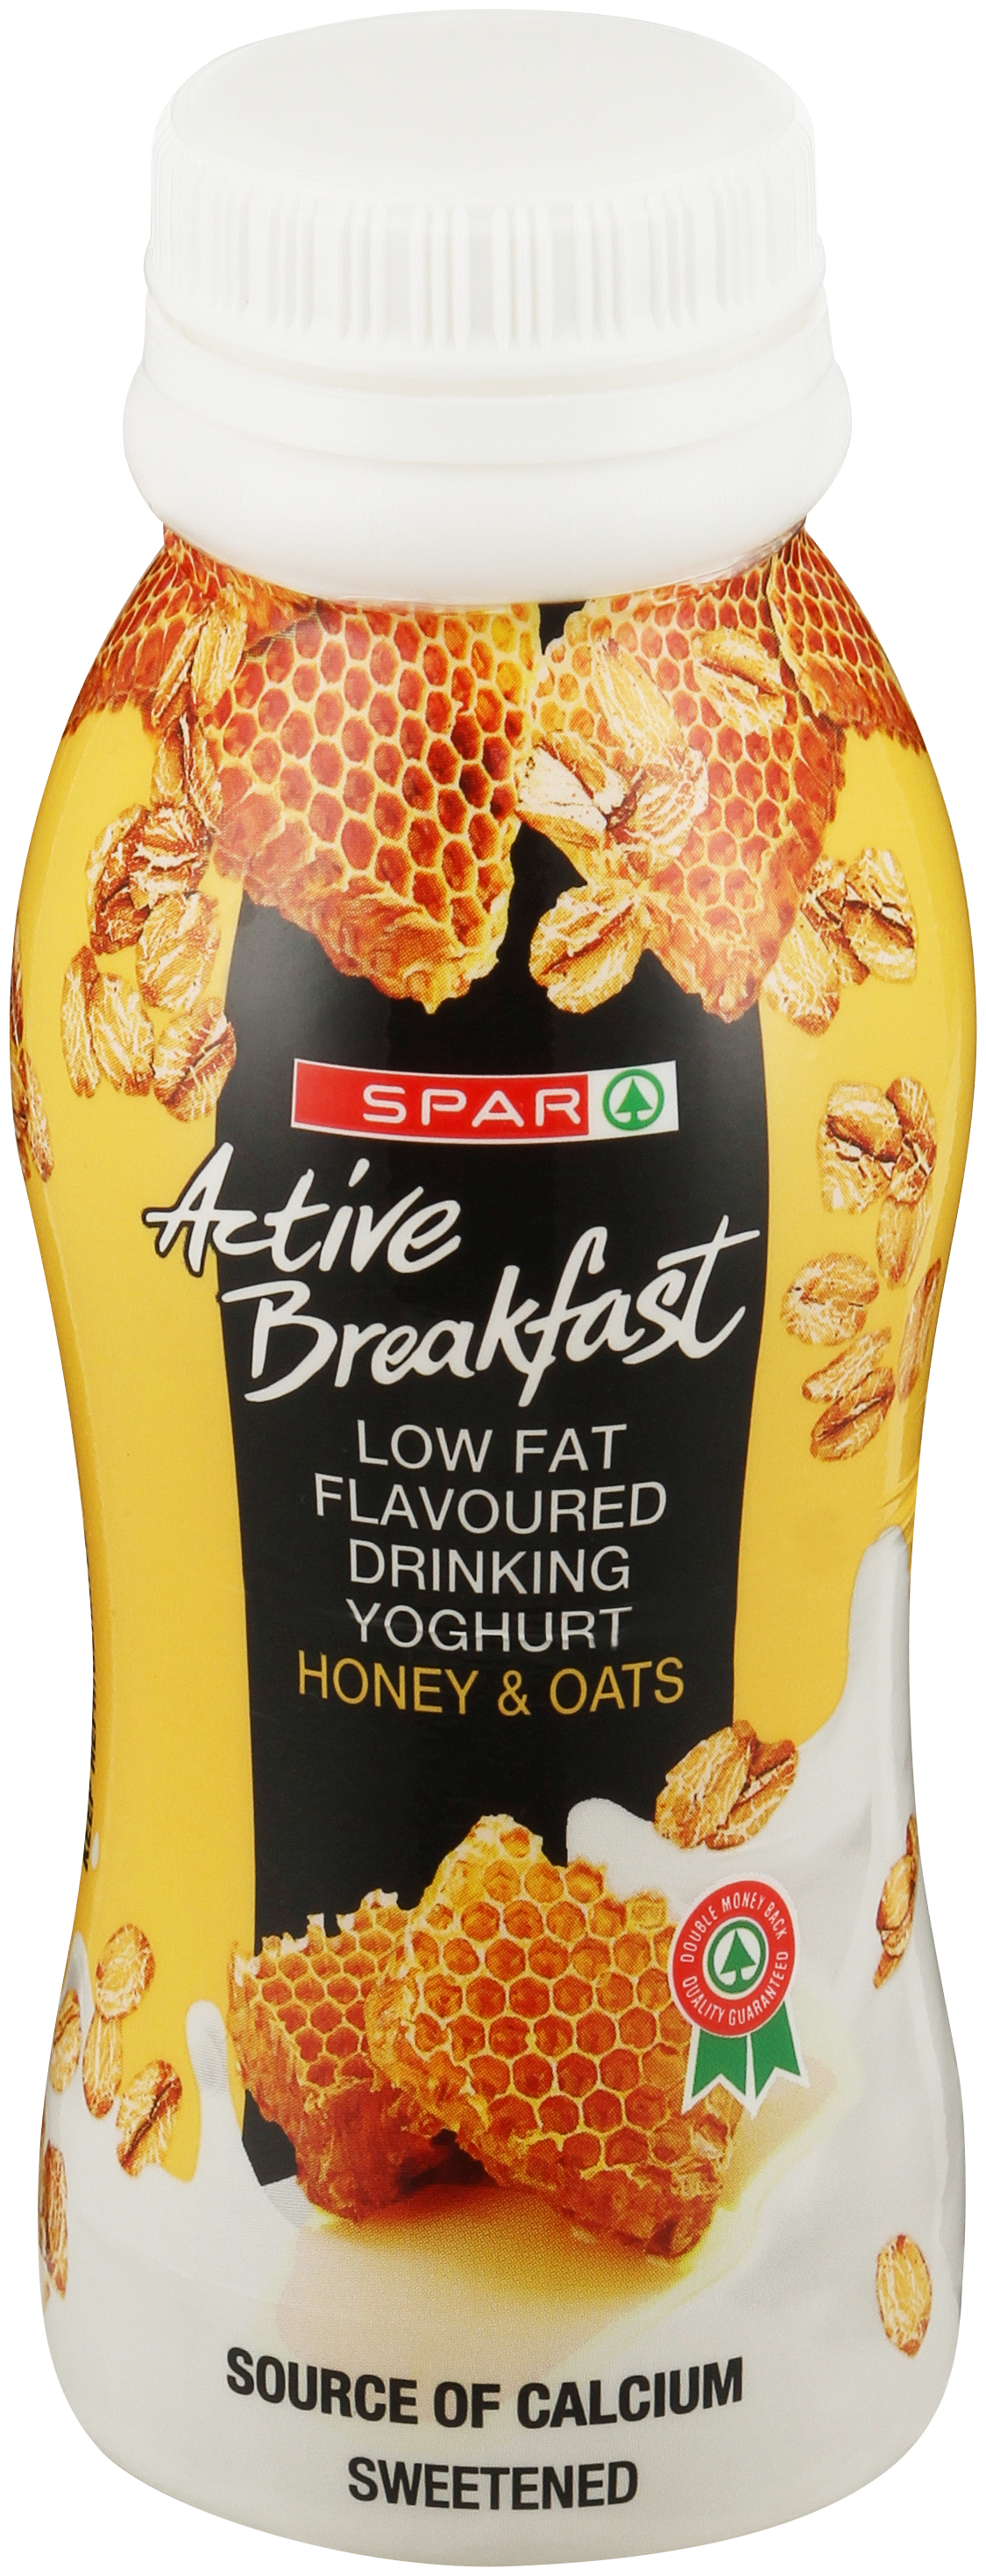 active breakfast honey & oats